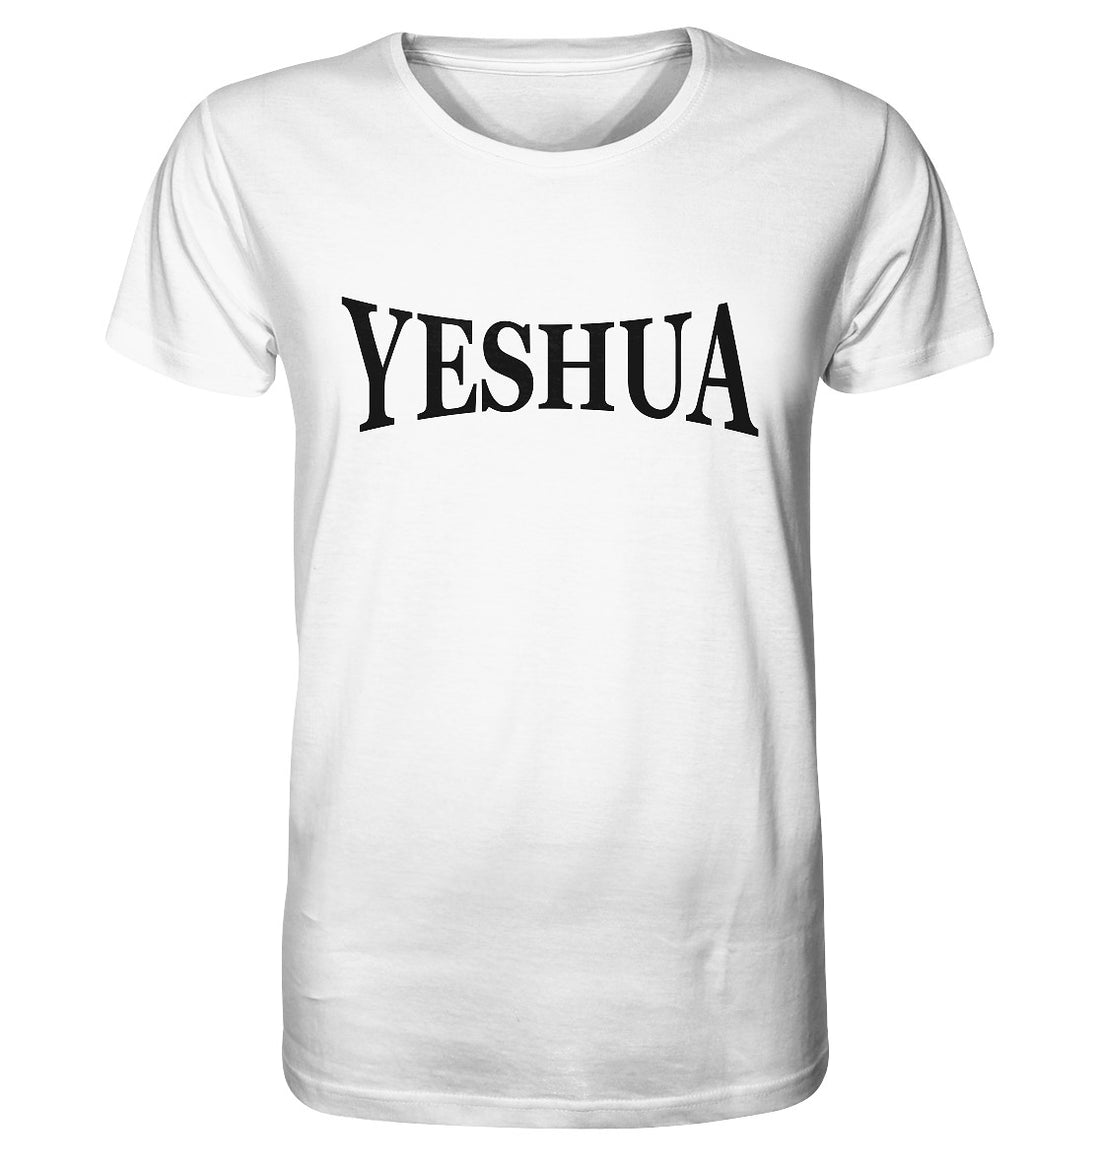 YESHUA - Organic Shirt